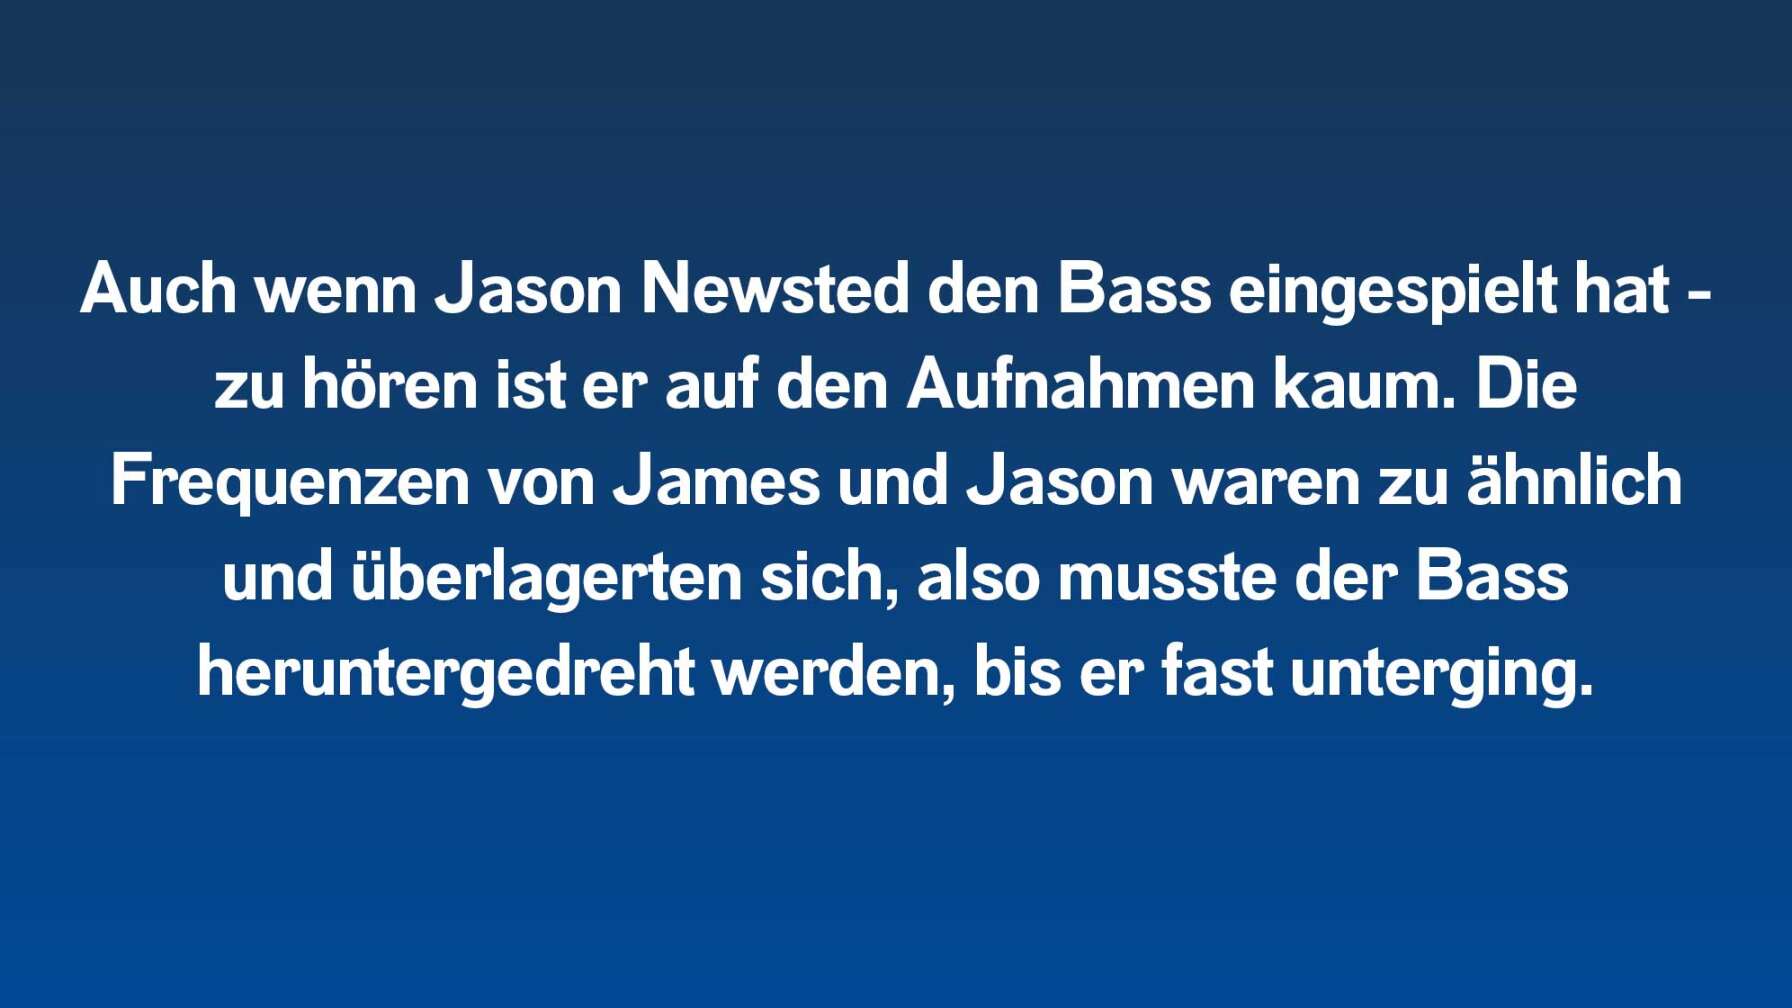 Auch wenn Jason Newsted den Bass eingespielt hat – zu hören ist er auf den Aufnahmen kaum. Die Frequenzen von James und Jason waren zu ähnlich und überlagerten sich, also musste der Bass heruntergedreht werden, bis er unterging.